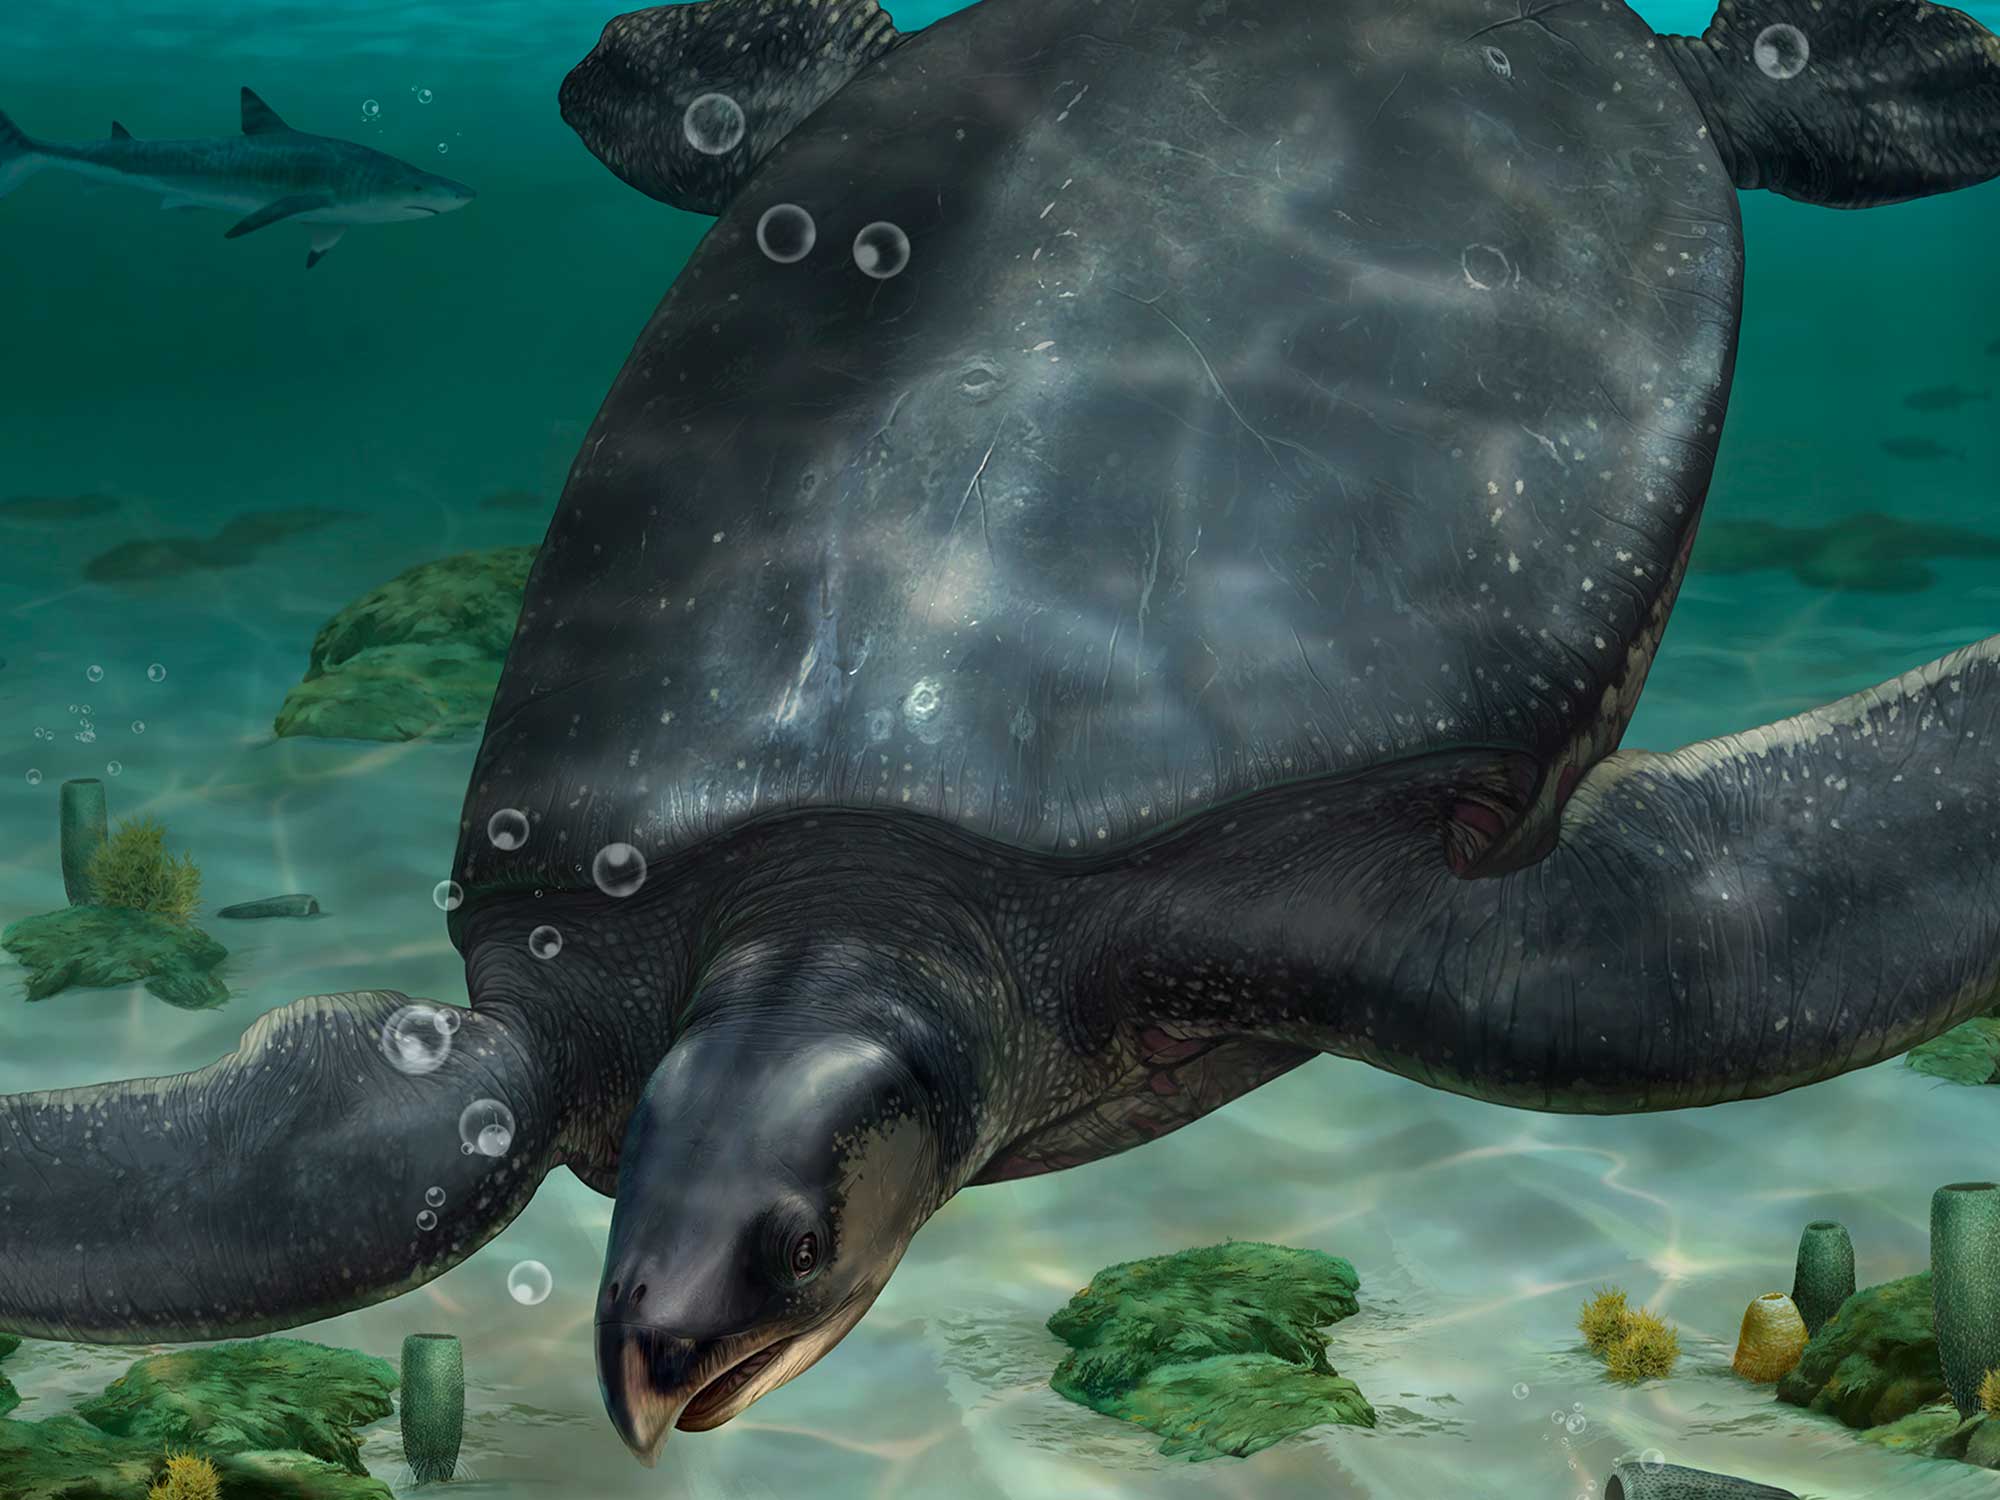 La tortuga extinta recién descubierta fue una de las más grandes de la historia